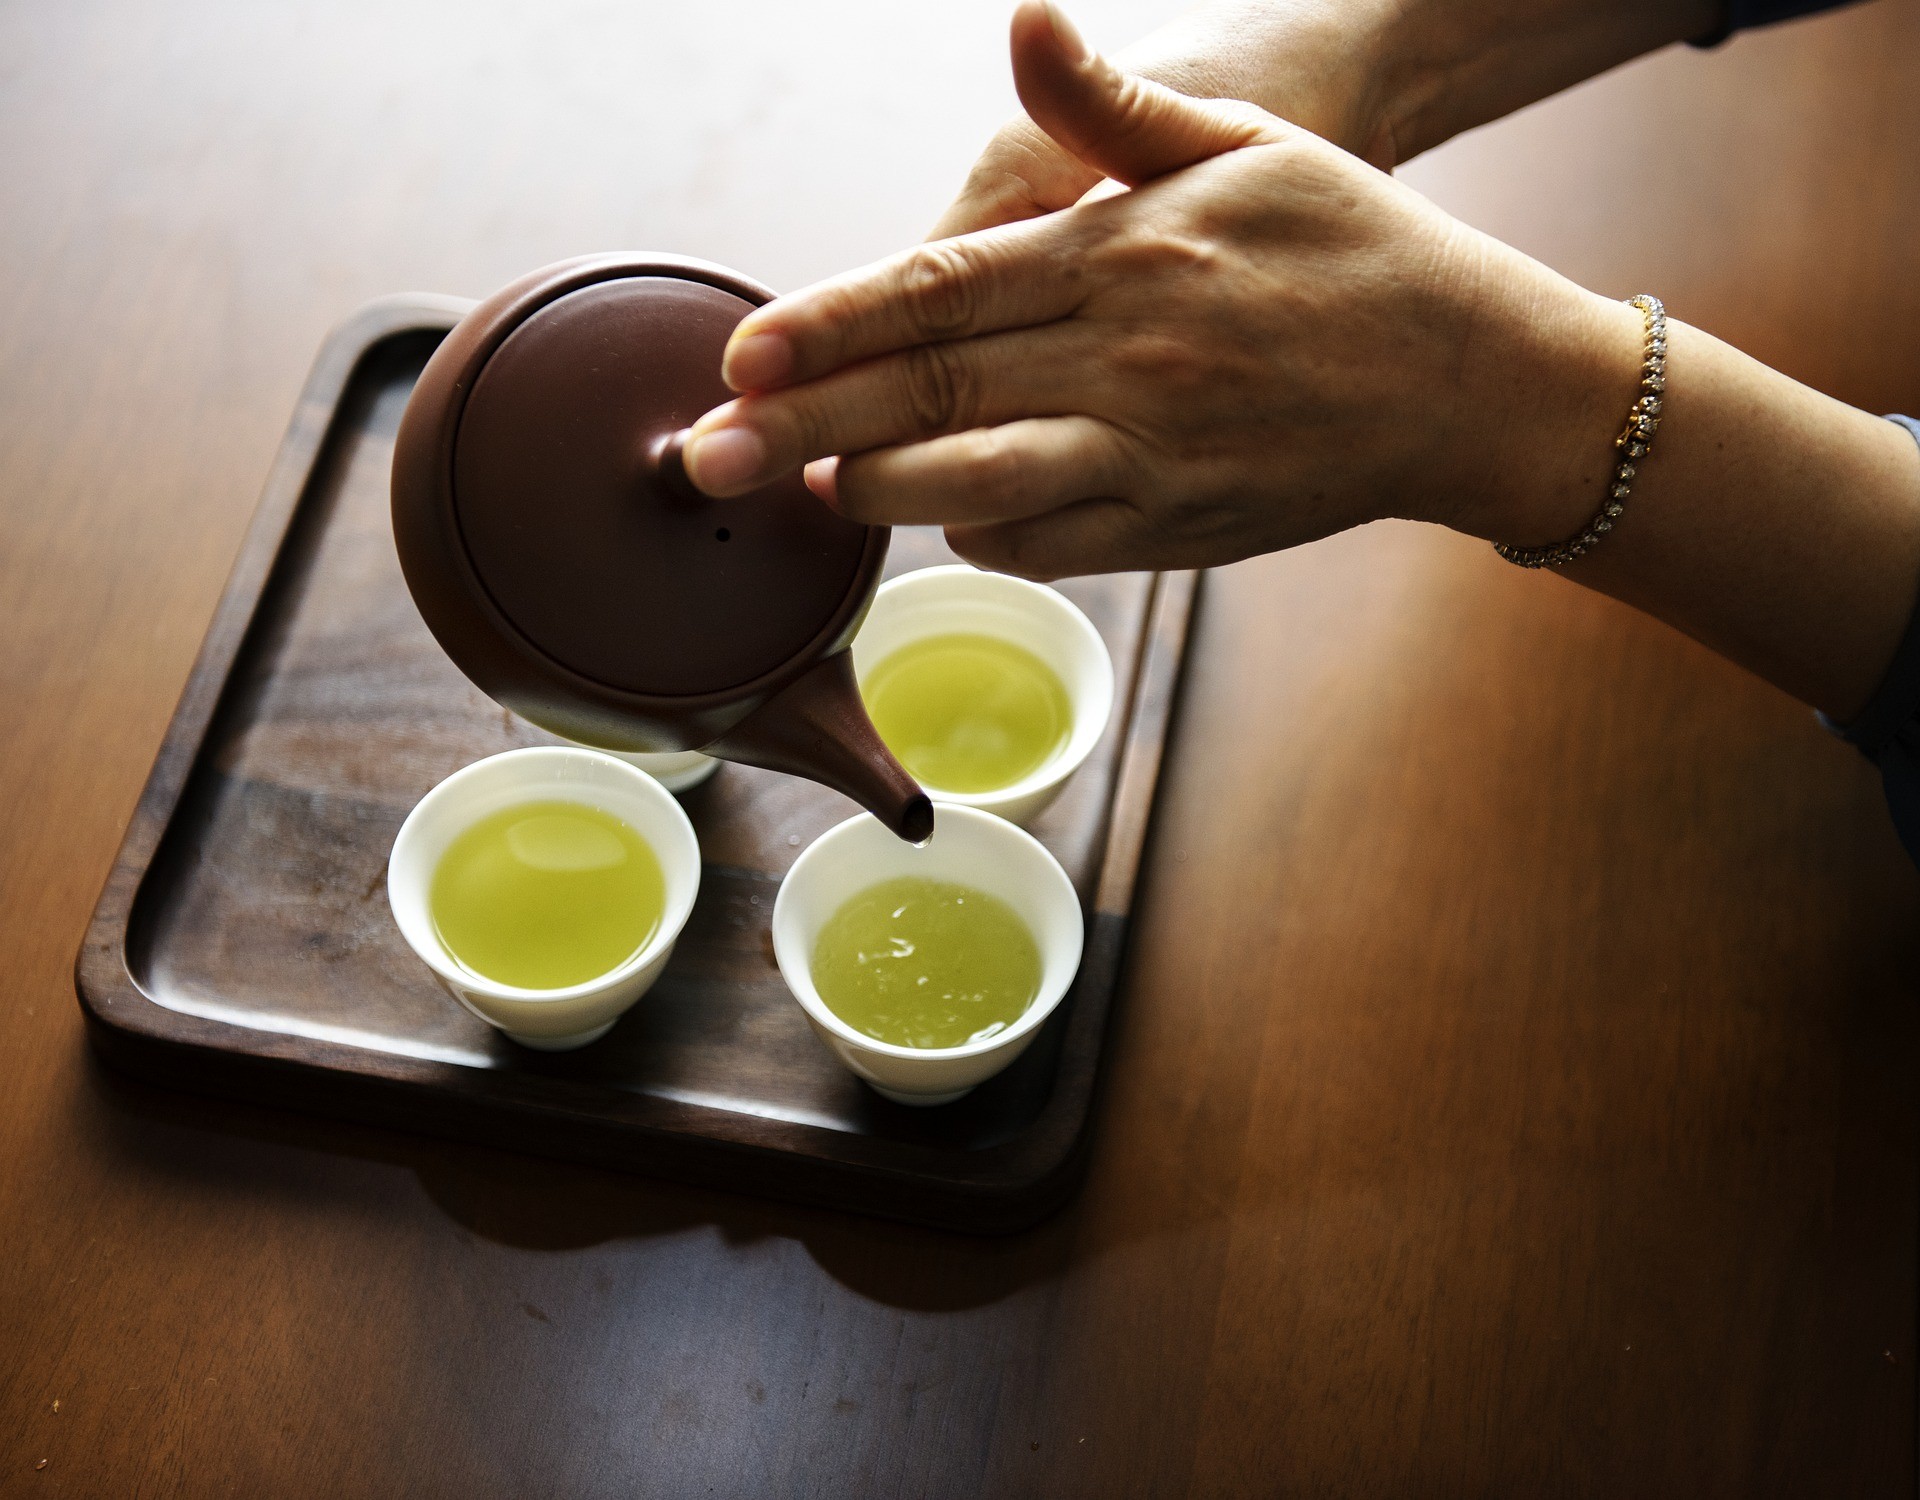 Chá verde é responsável por benefícios para o organismo (Foto: Pixabay)